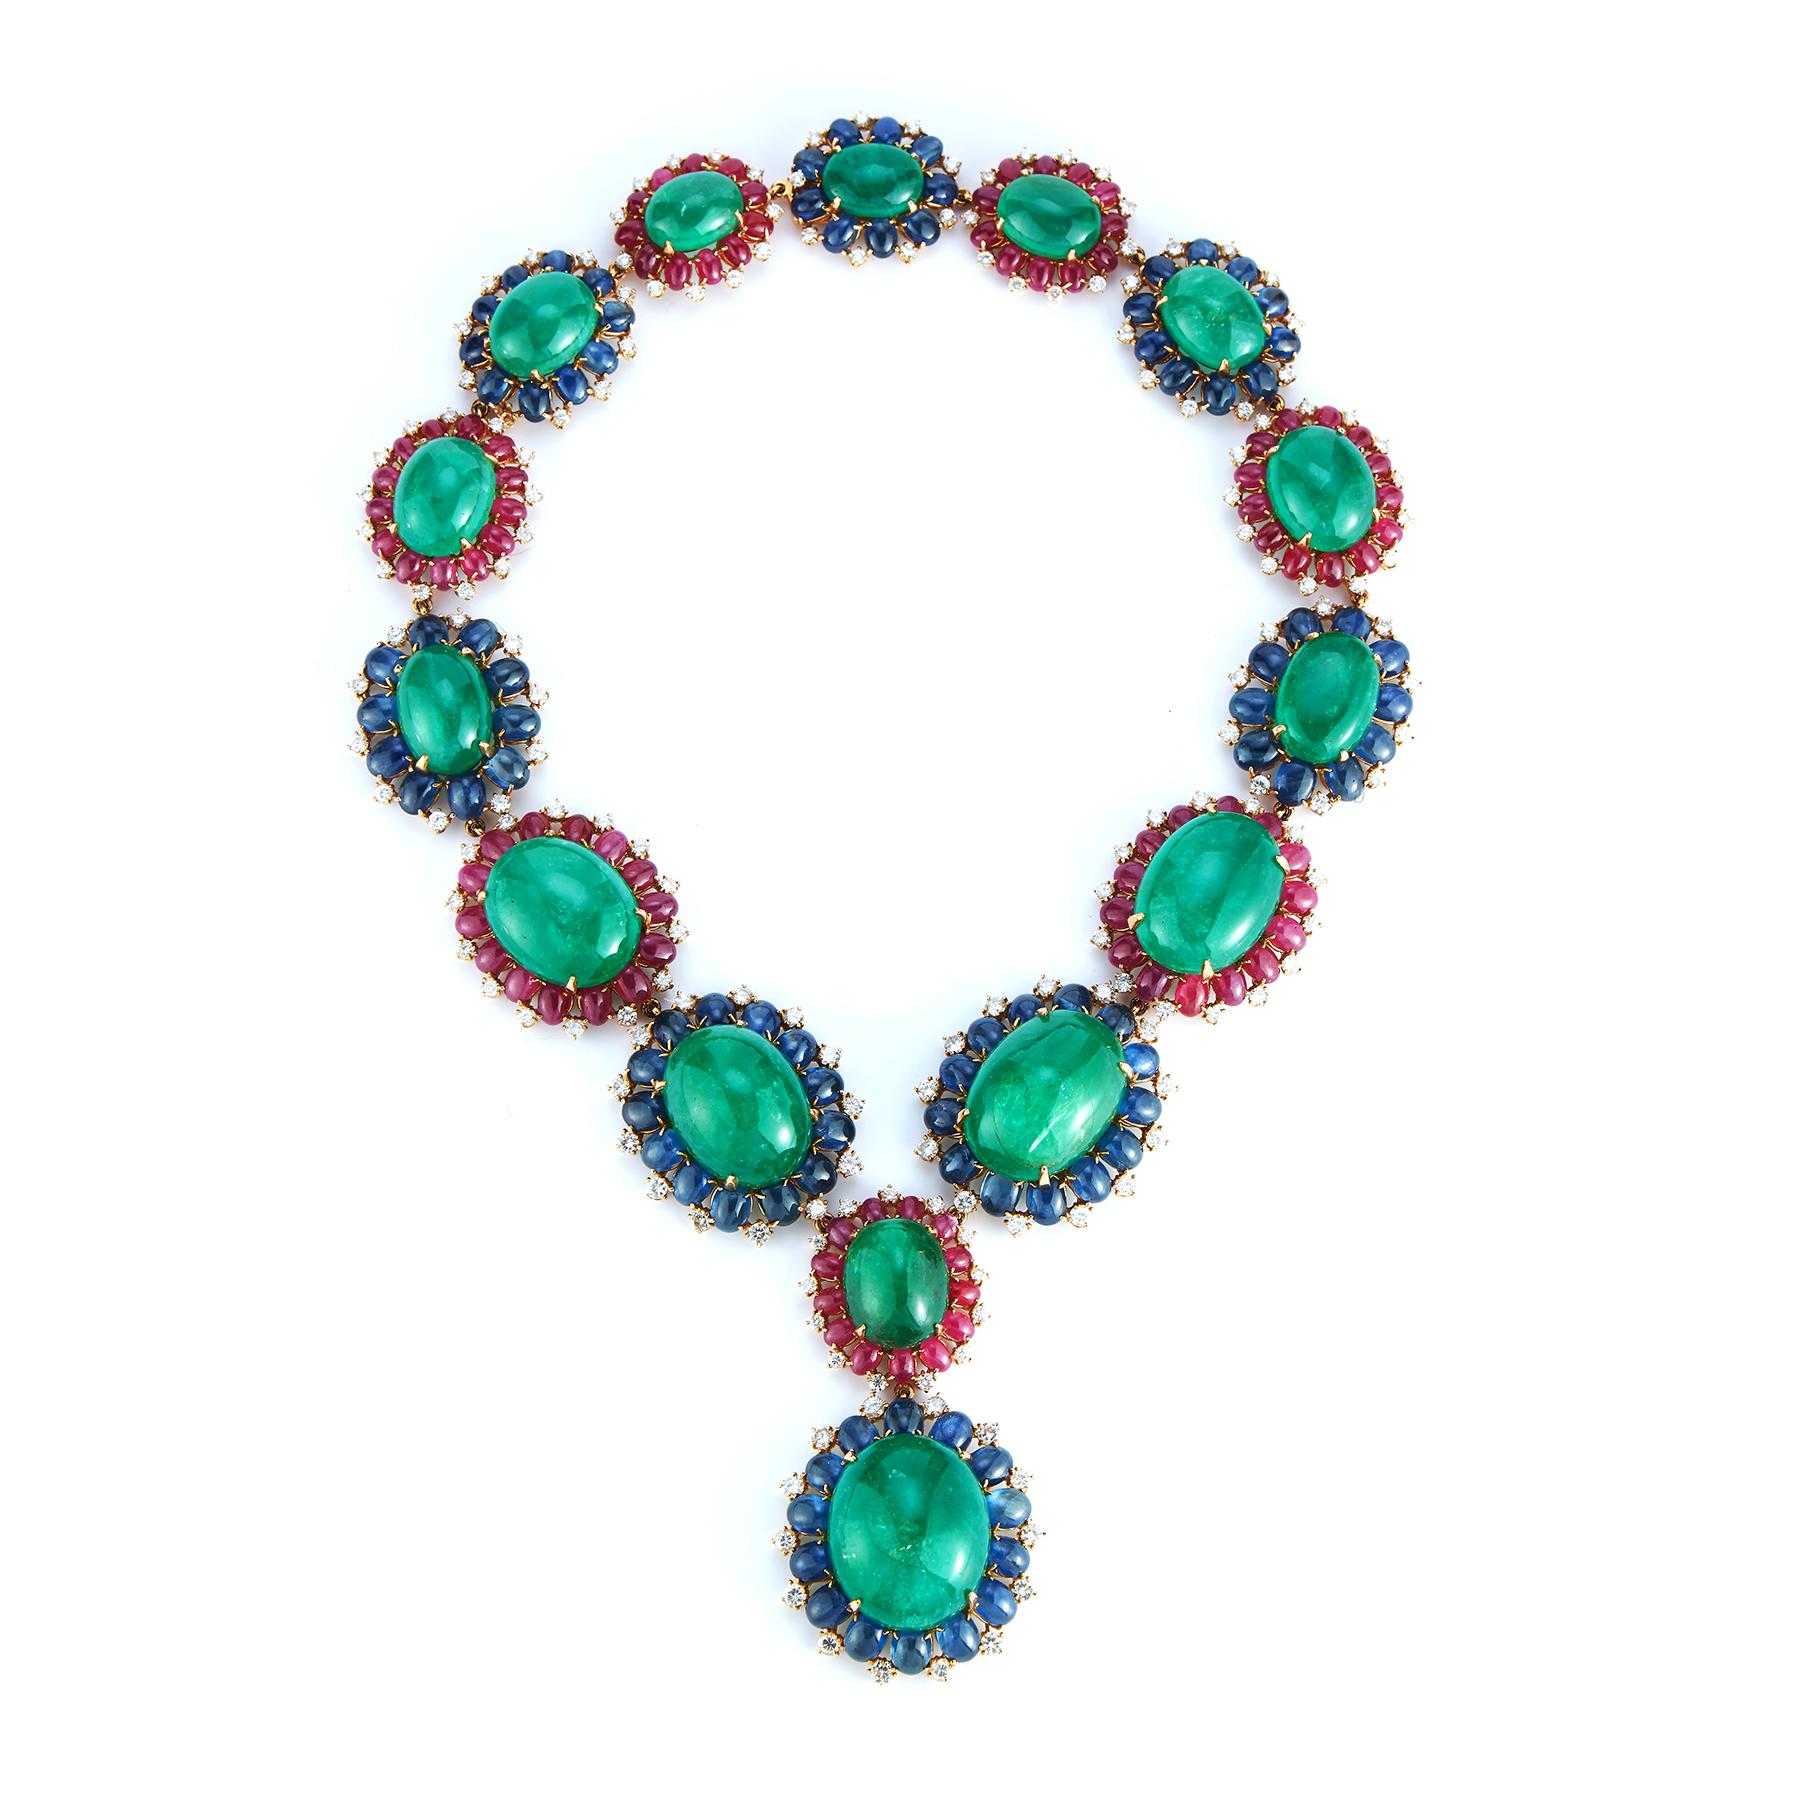 Bulgari Smaragd Halskette und Ohrringe Set
Die atemberaubende Halskette besteht aus Cabochon-Smaragden, die von Cabochon-Smaragden, Saphiren und Rubinen umrahmt und von runden Diamanten hervorgehoben werden; die Ohrclips sind ähnlich gefasst.
Länge